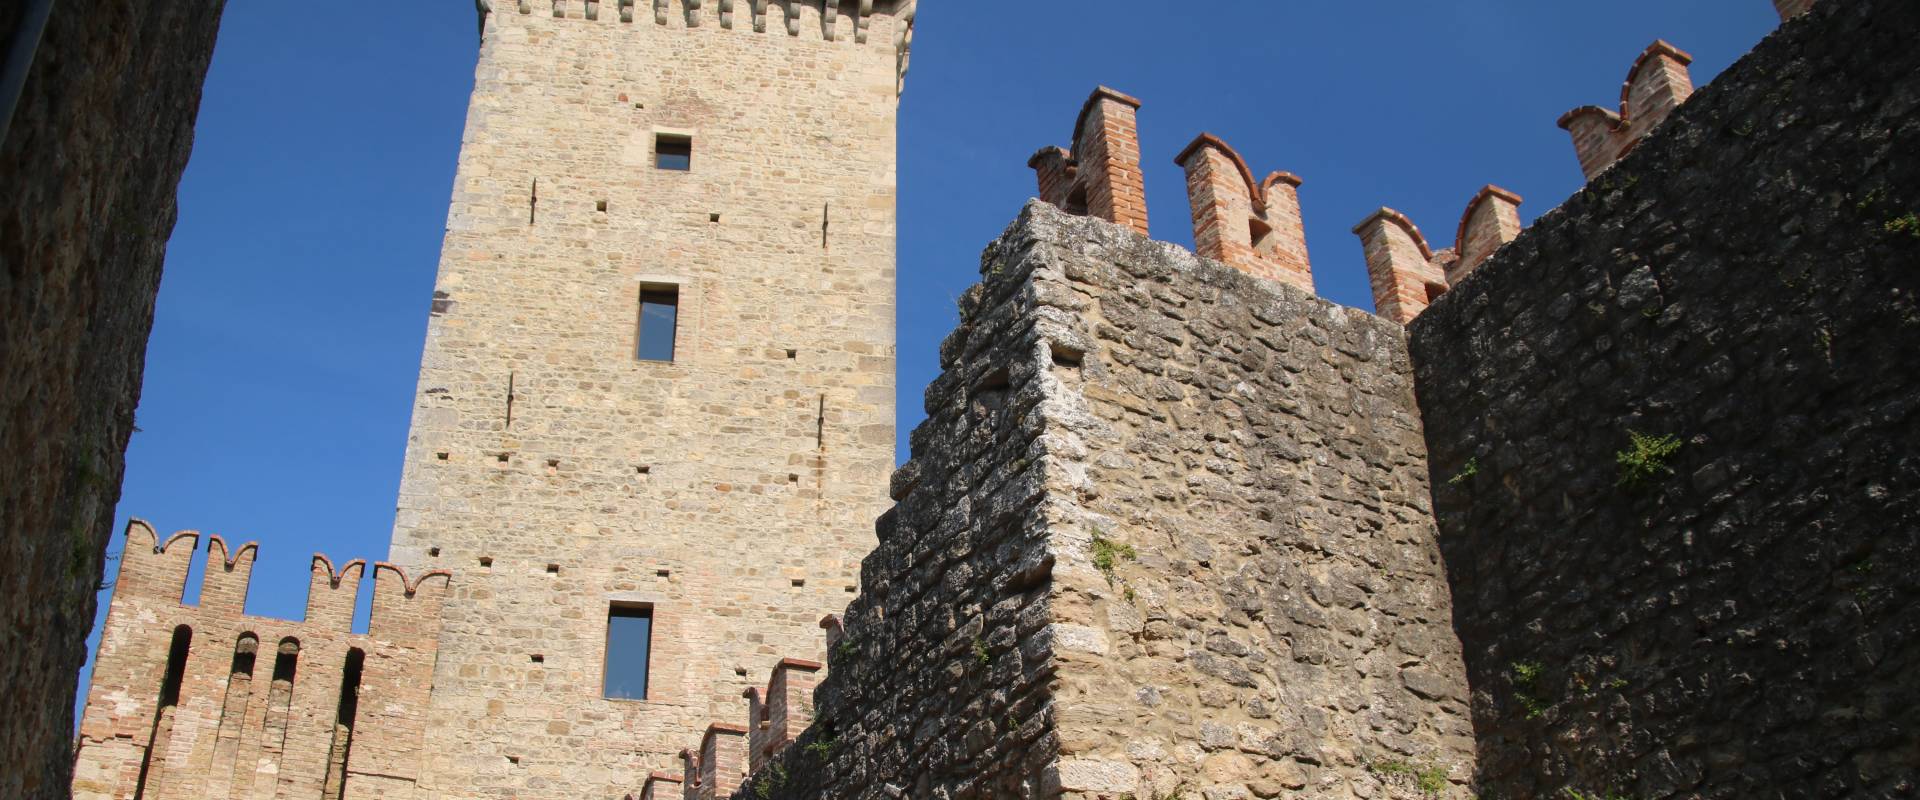 Castello di Vigoleno (Vernasca), rivellino e mastio 04 photo by Mongolo1984